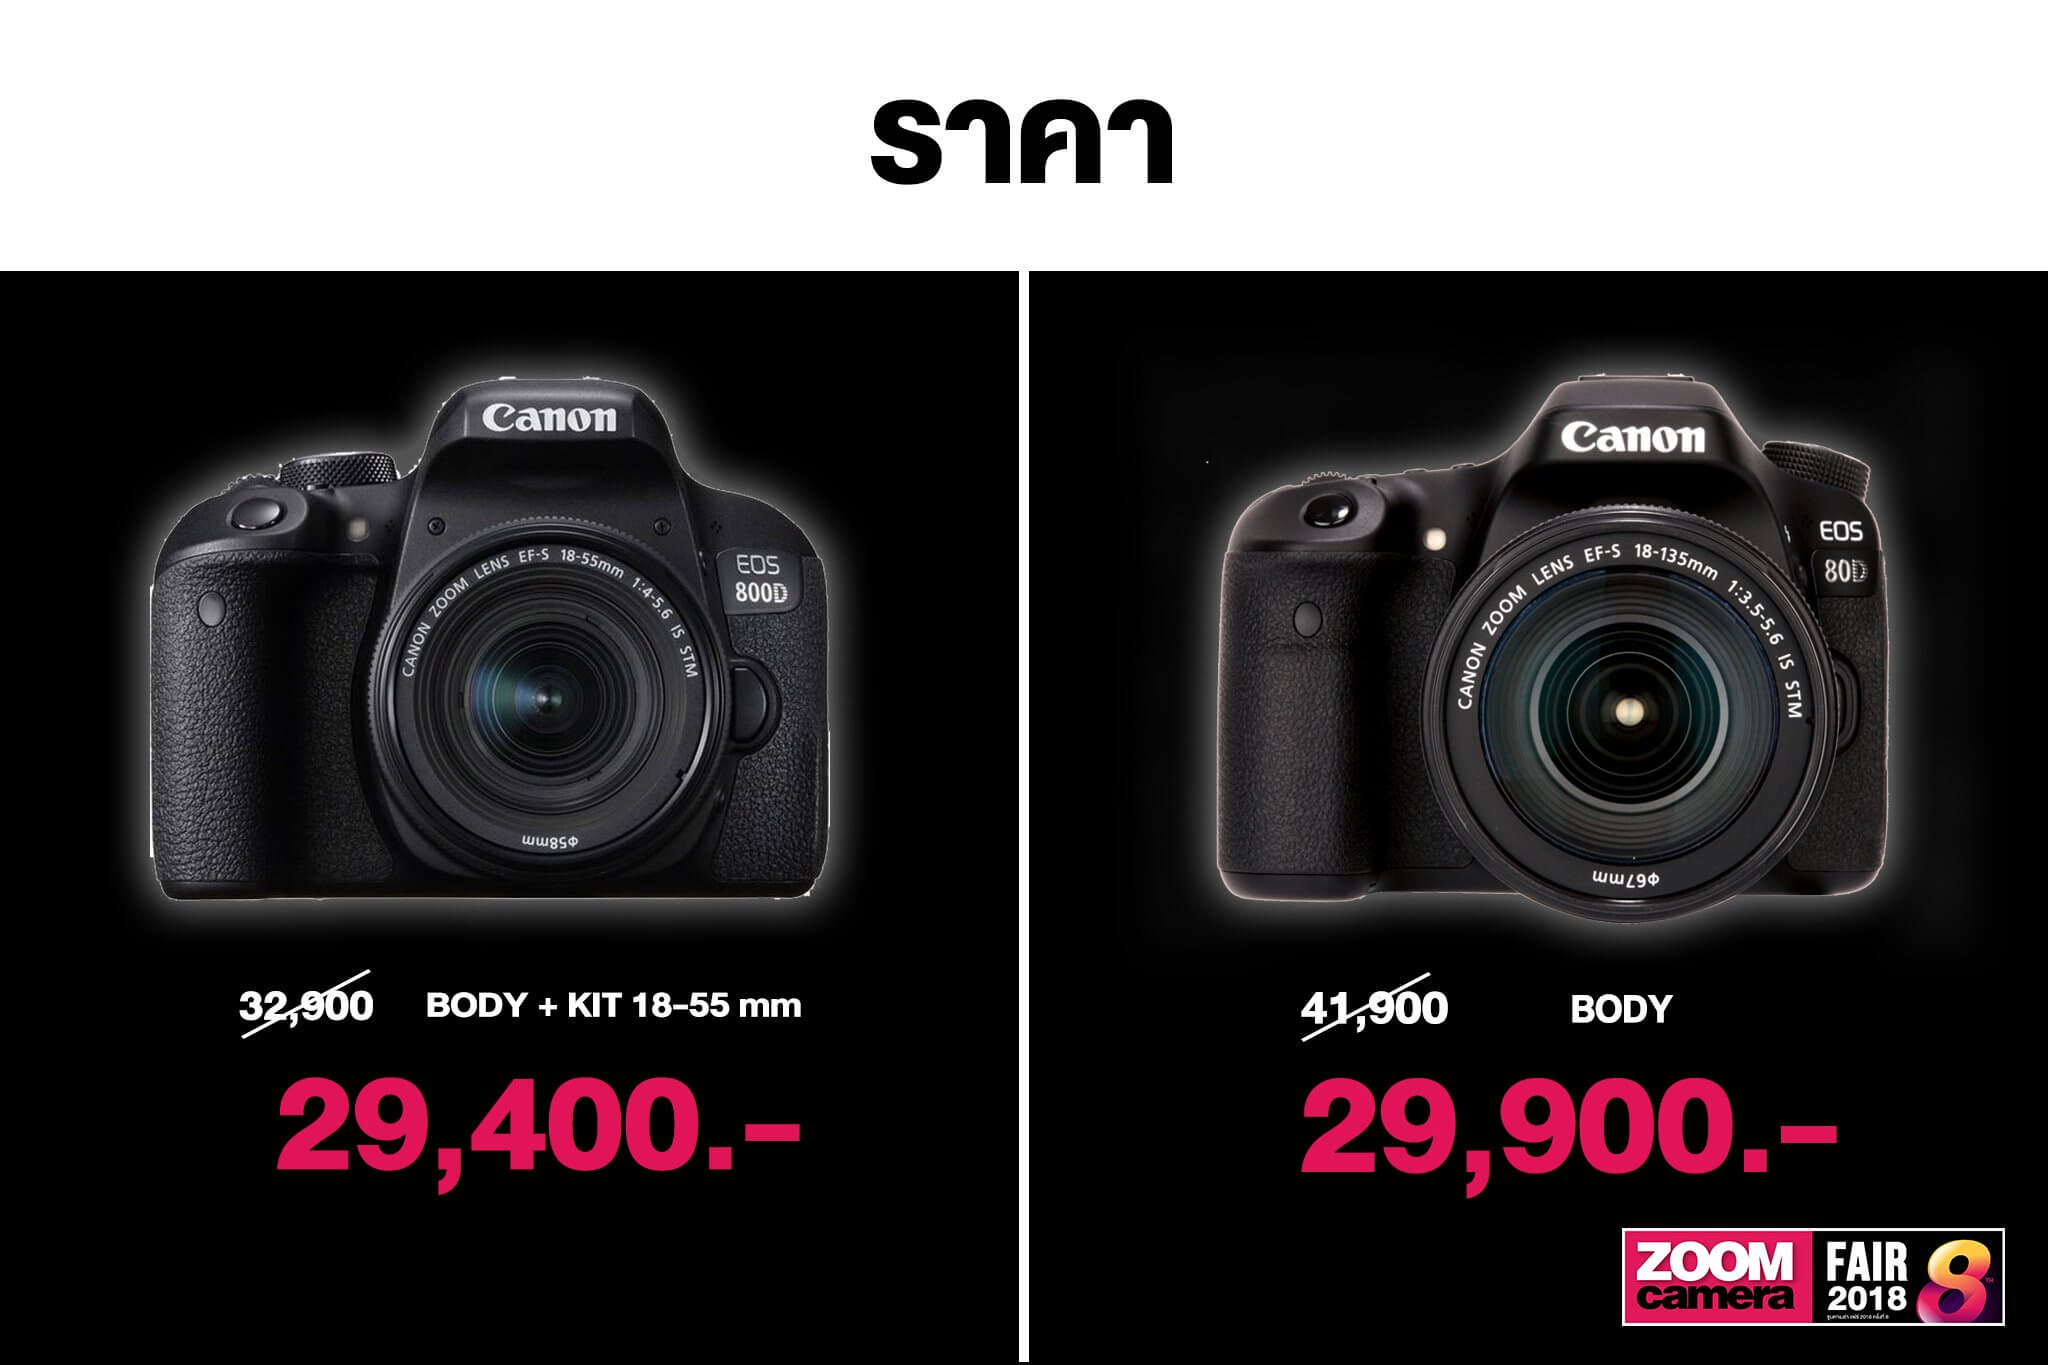 เปรียบเทียบ Canon EOS 800D VS Canon EOS 80D ควรเลือกซื้อรุ่นไหนดี 